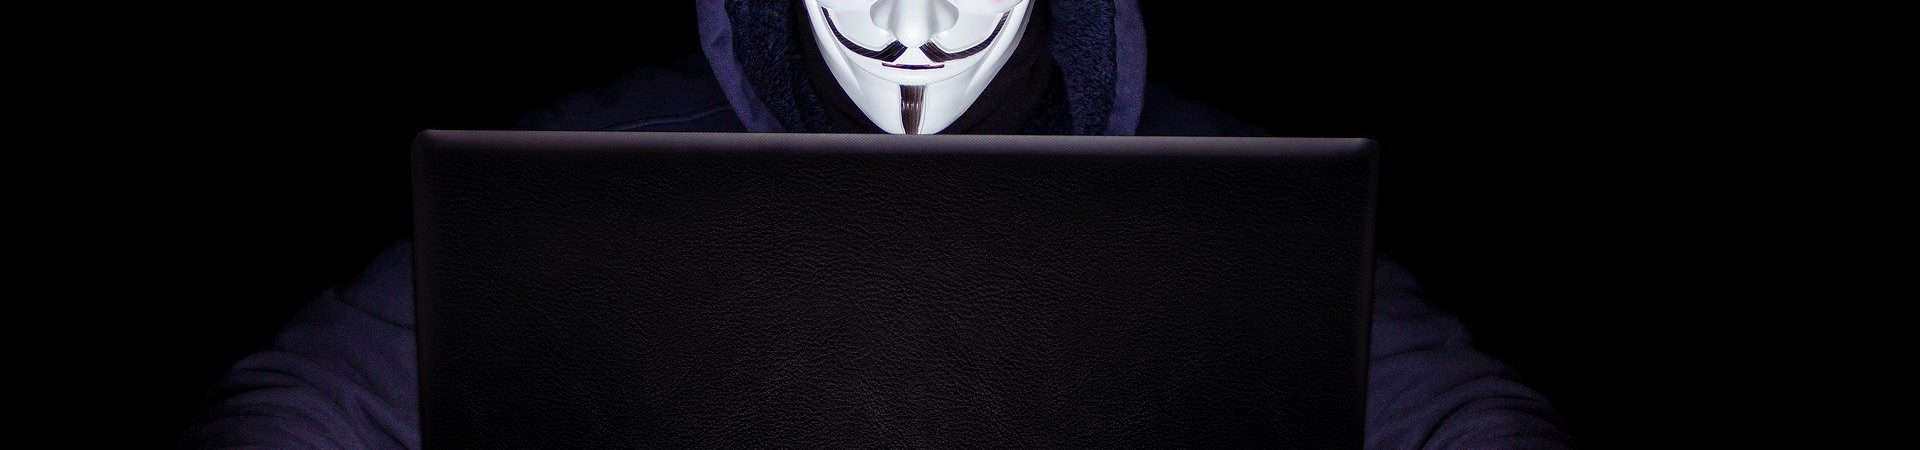 hacker do anonymous com máscara do guy fawkes na frente do notebook